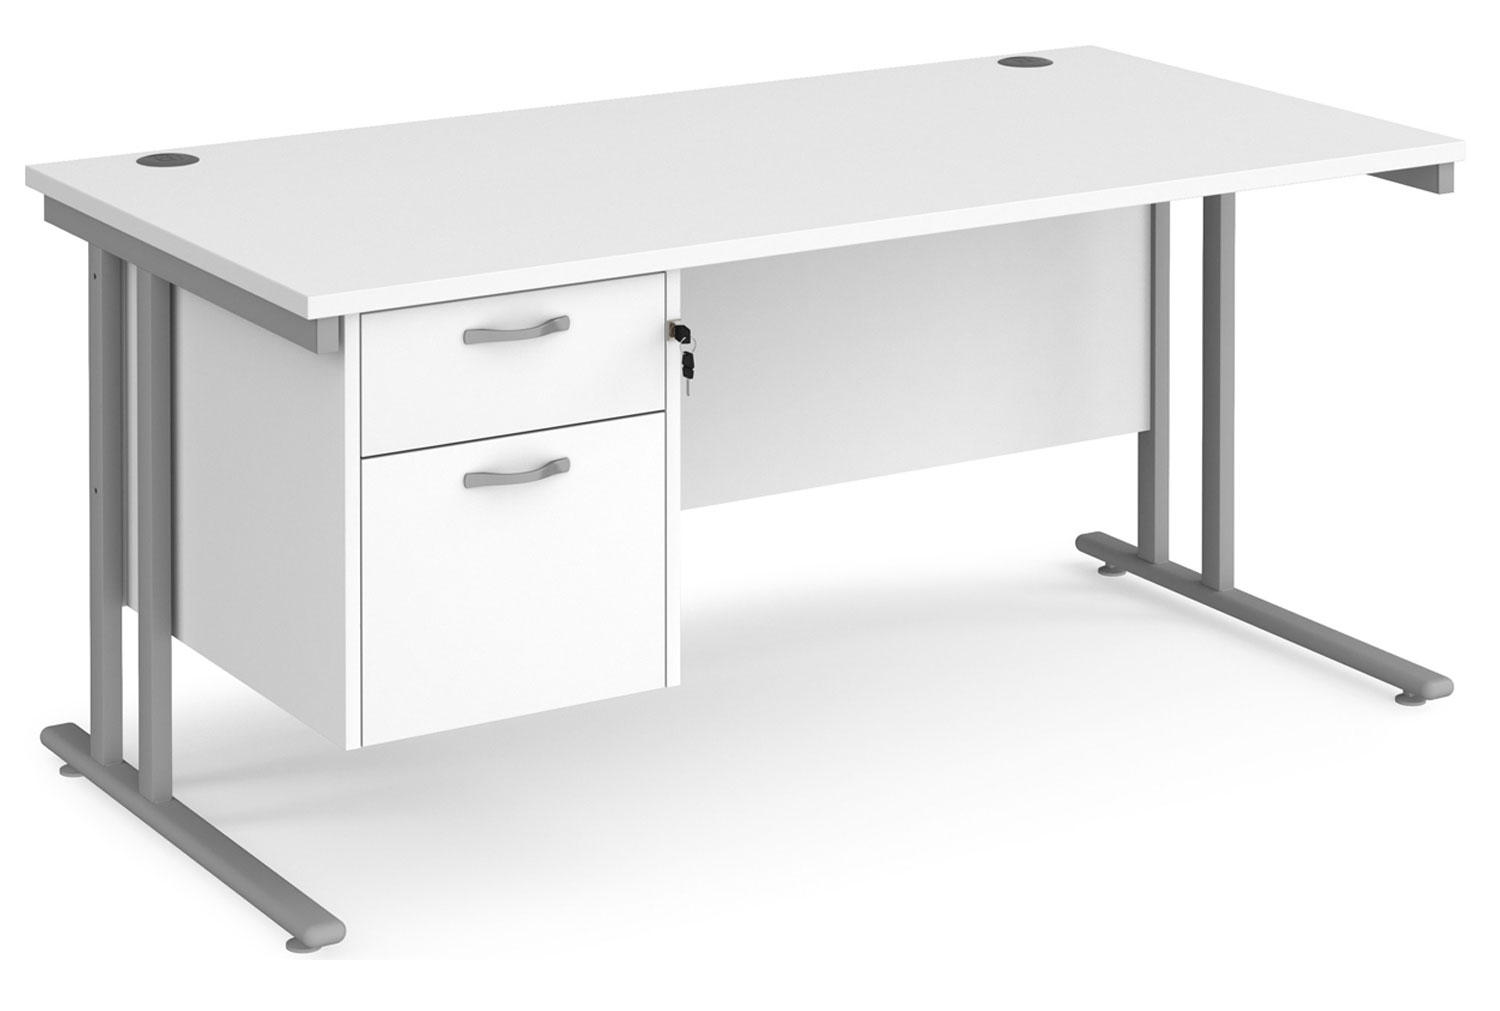 Value Line Deluxe C-Leg Rectangular Office Desk 2 Drawers (Silver Legs), 160wx80dx73h (cm), White, Fully Installed